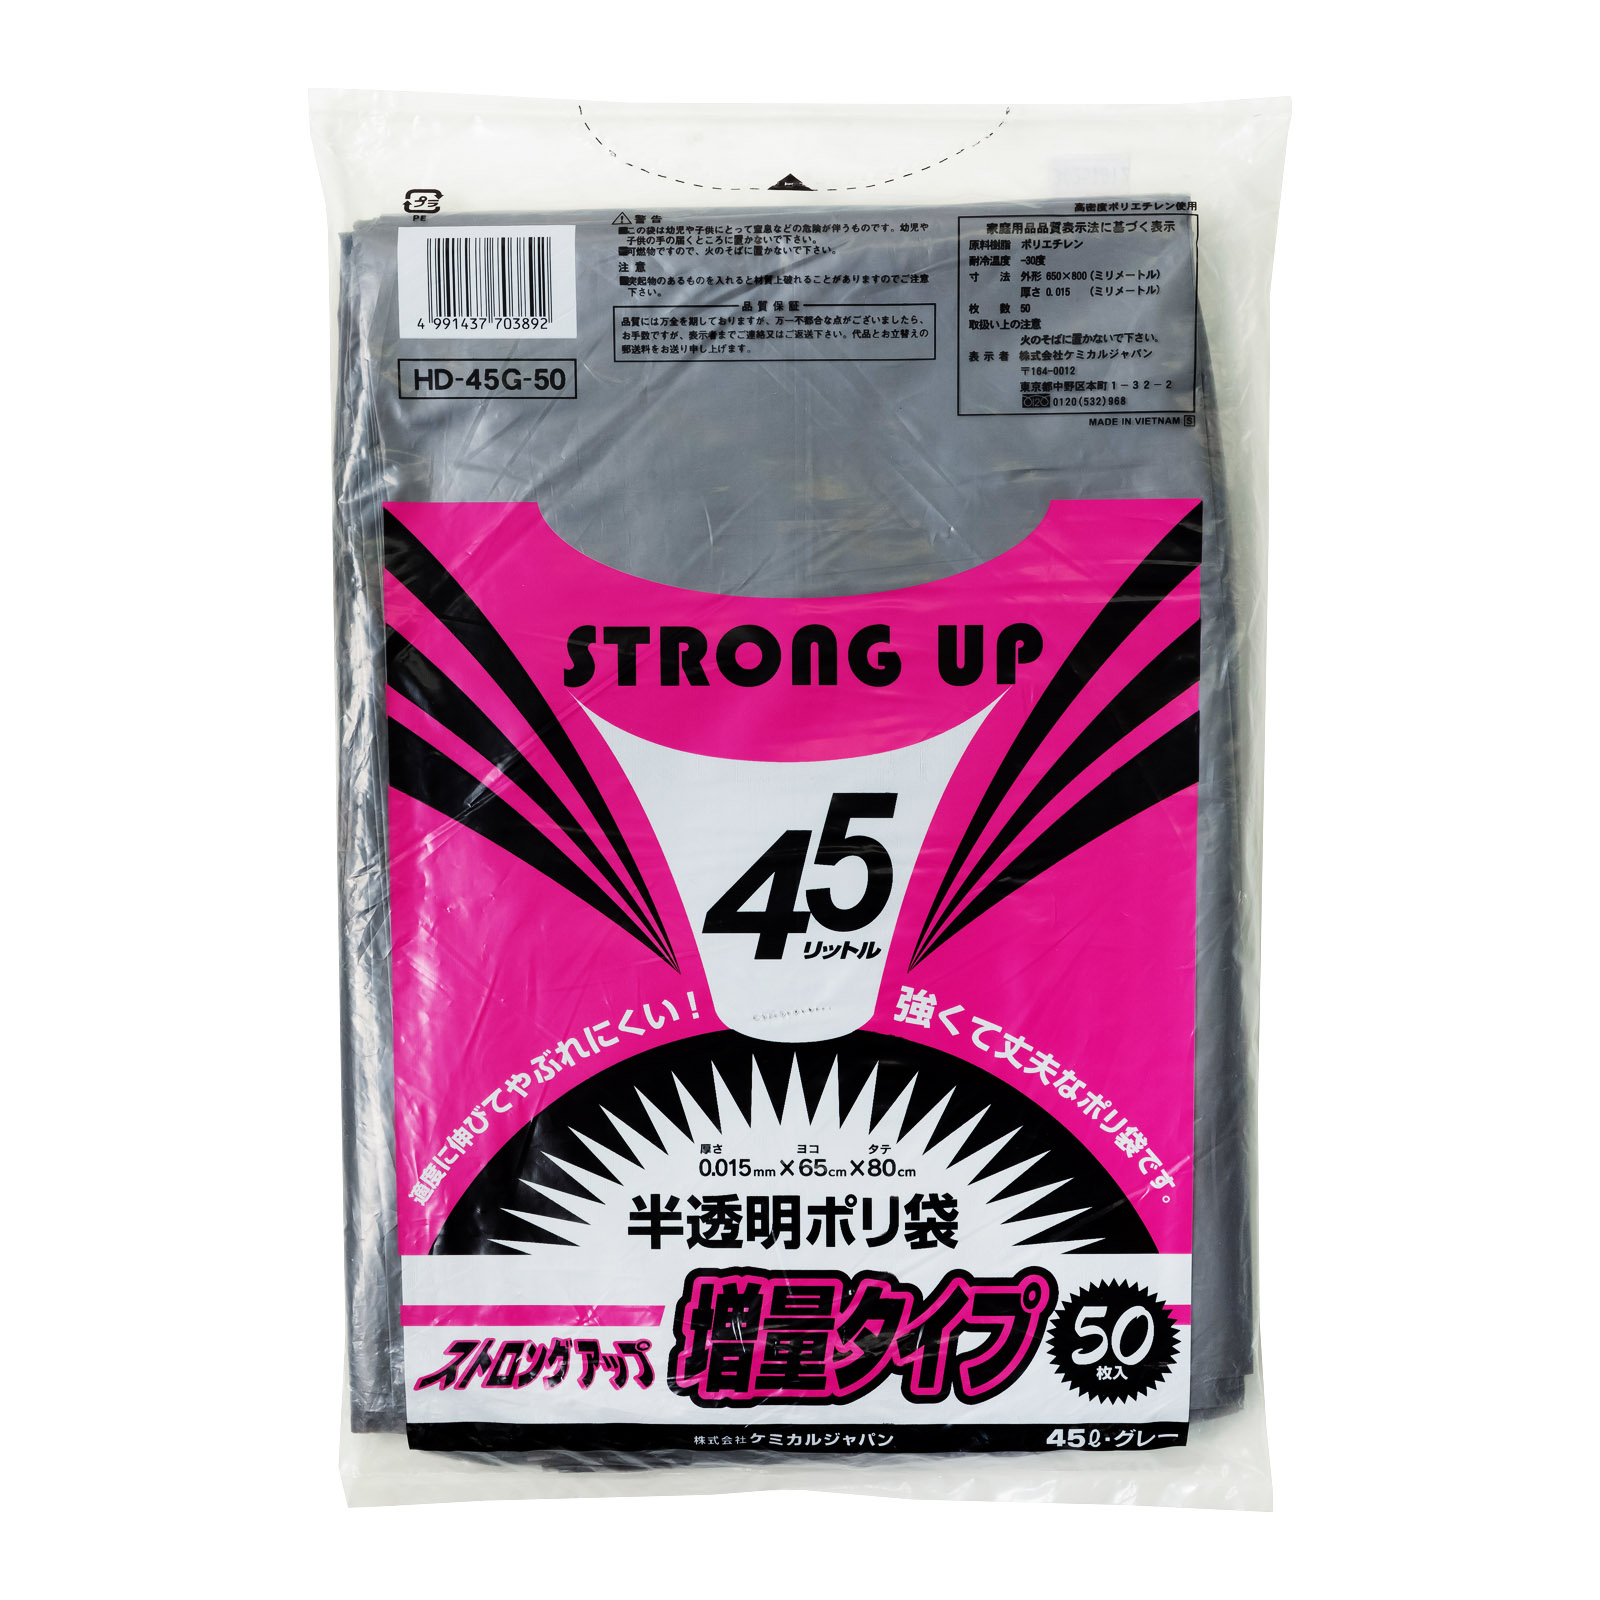 ストロングアップ45L<br />
増量タイプ・50P